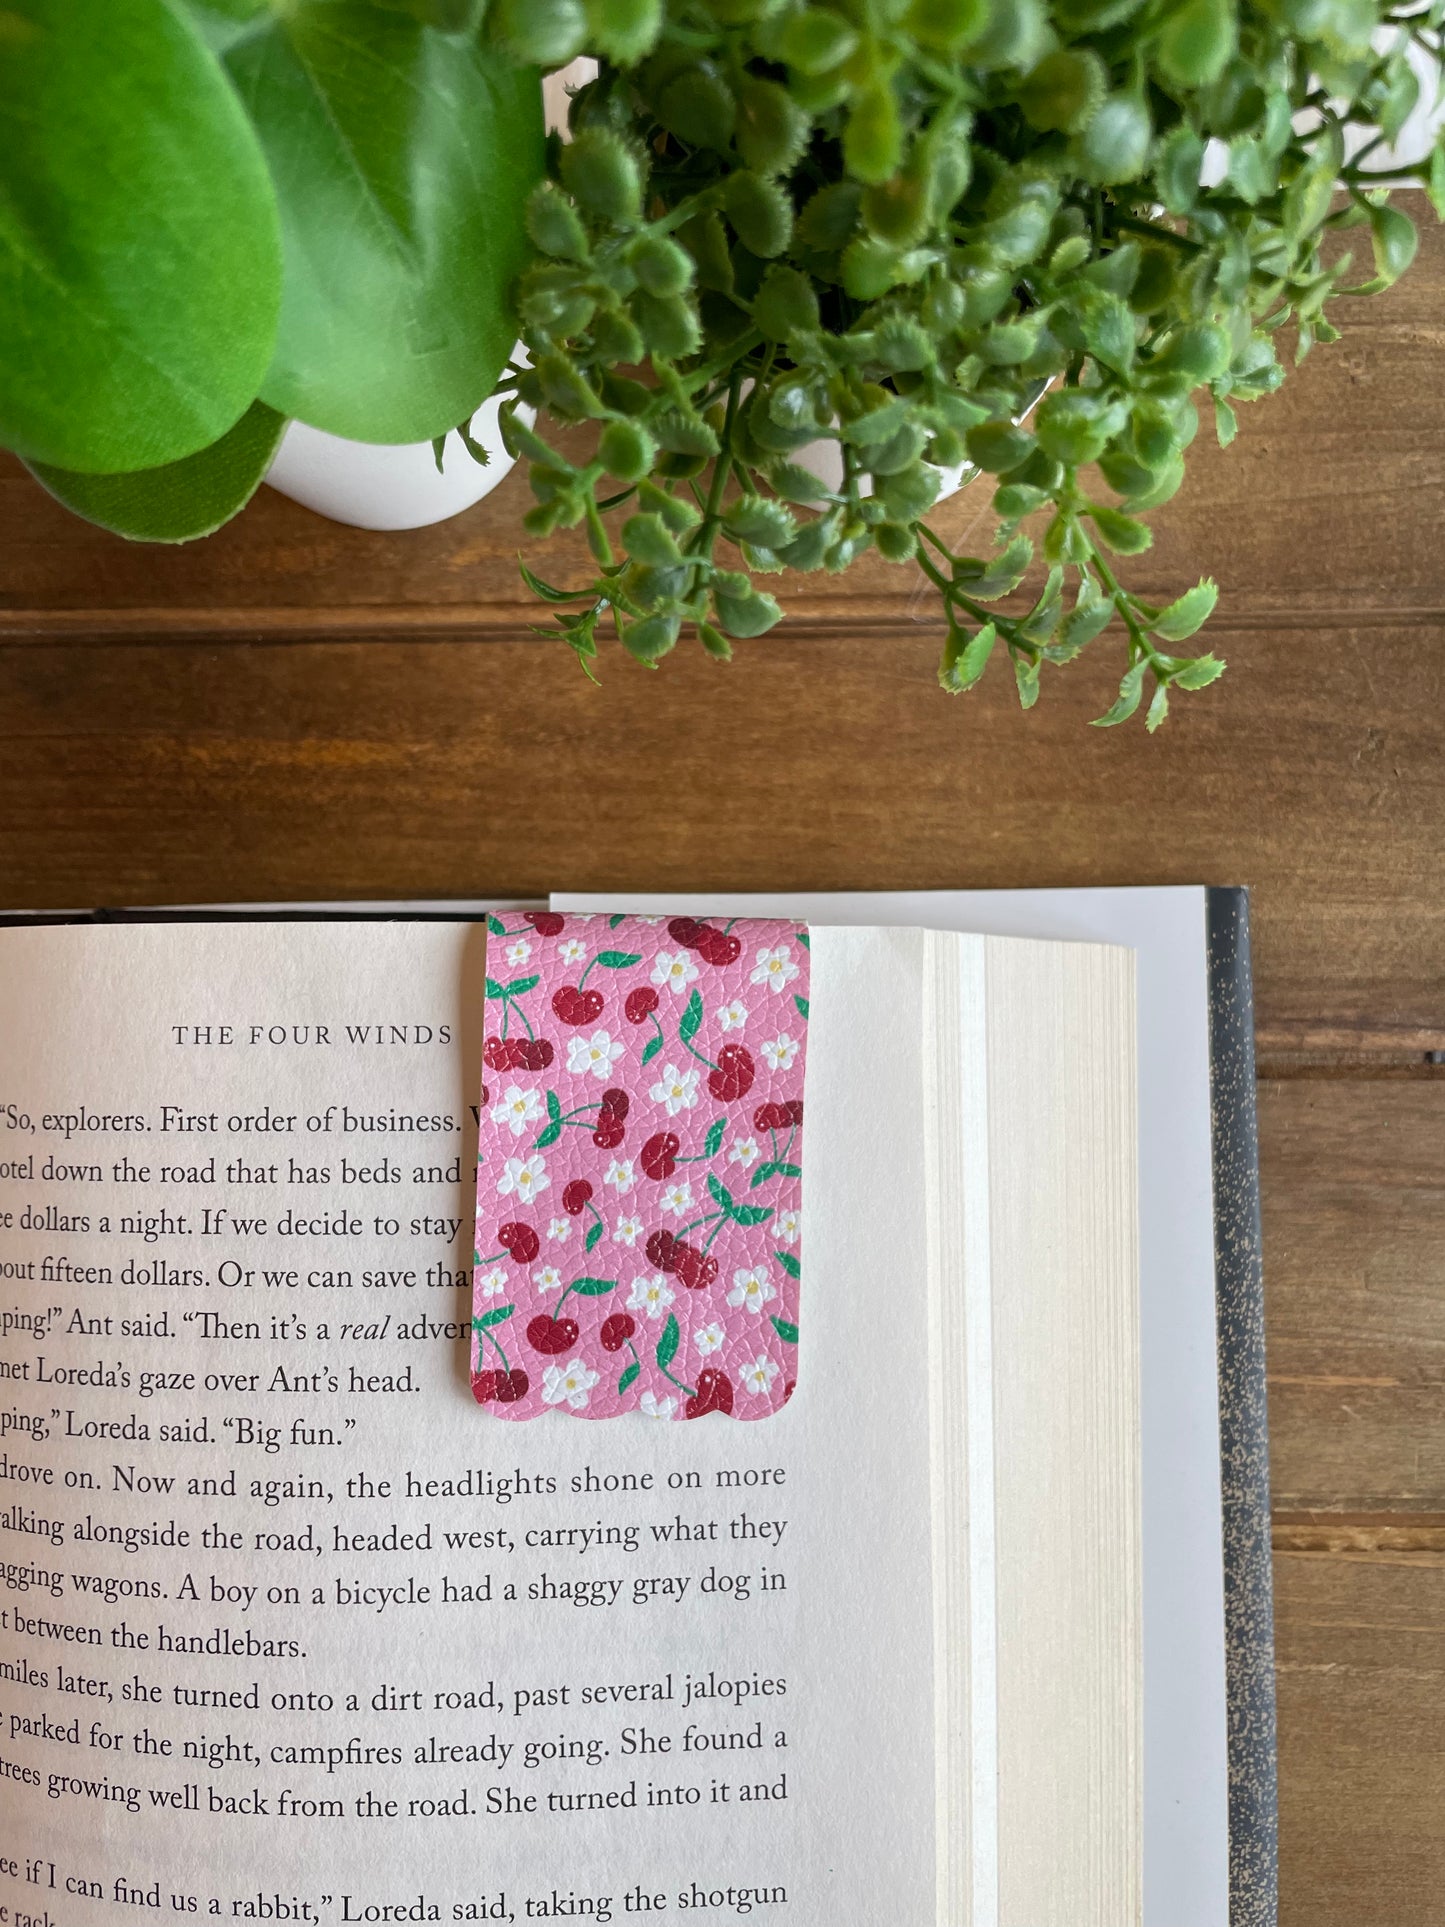 Cherries Bookmark